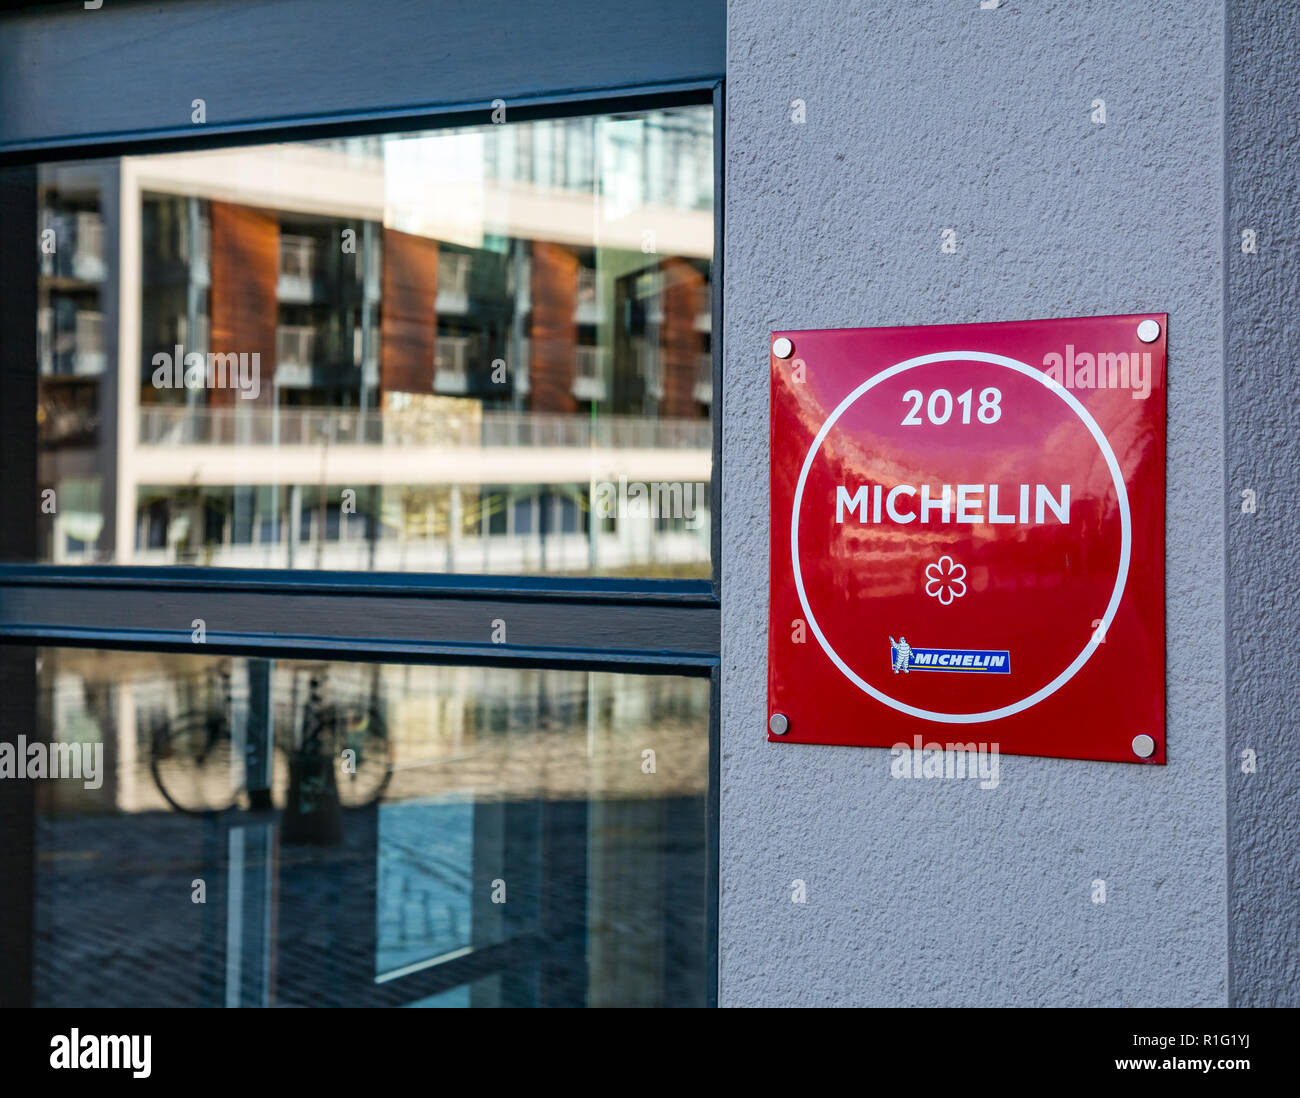 Vor Martin Wishart 2018 Restaurant mit Michelin-Stern unterzeichnen, das Ufer, Leith, Edinburgh, Schottland, Großbritannien Stockfoto